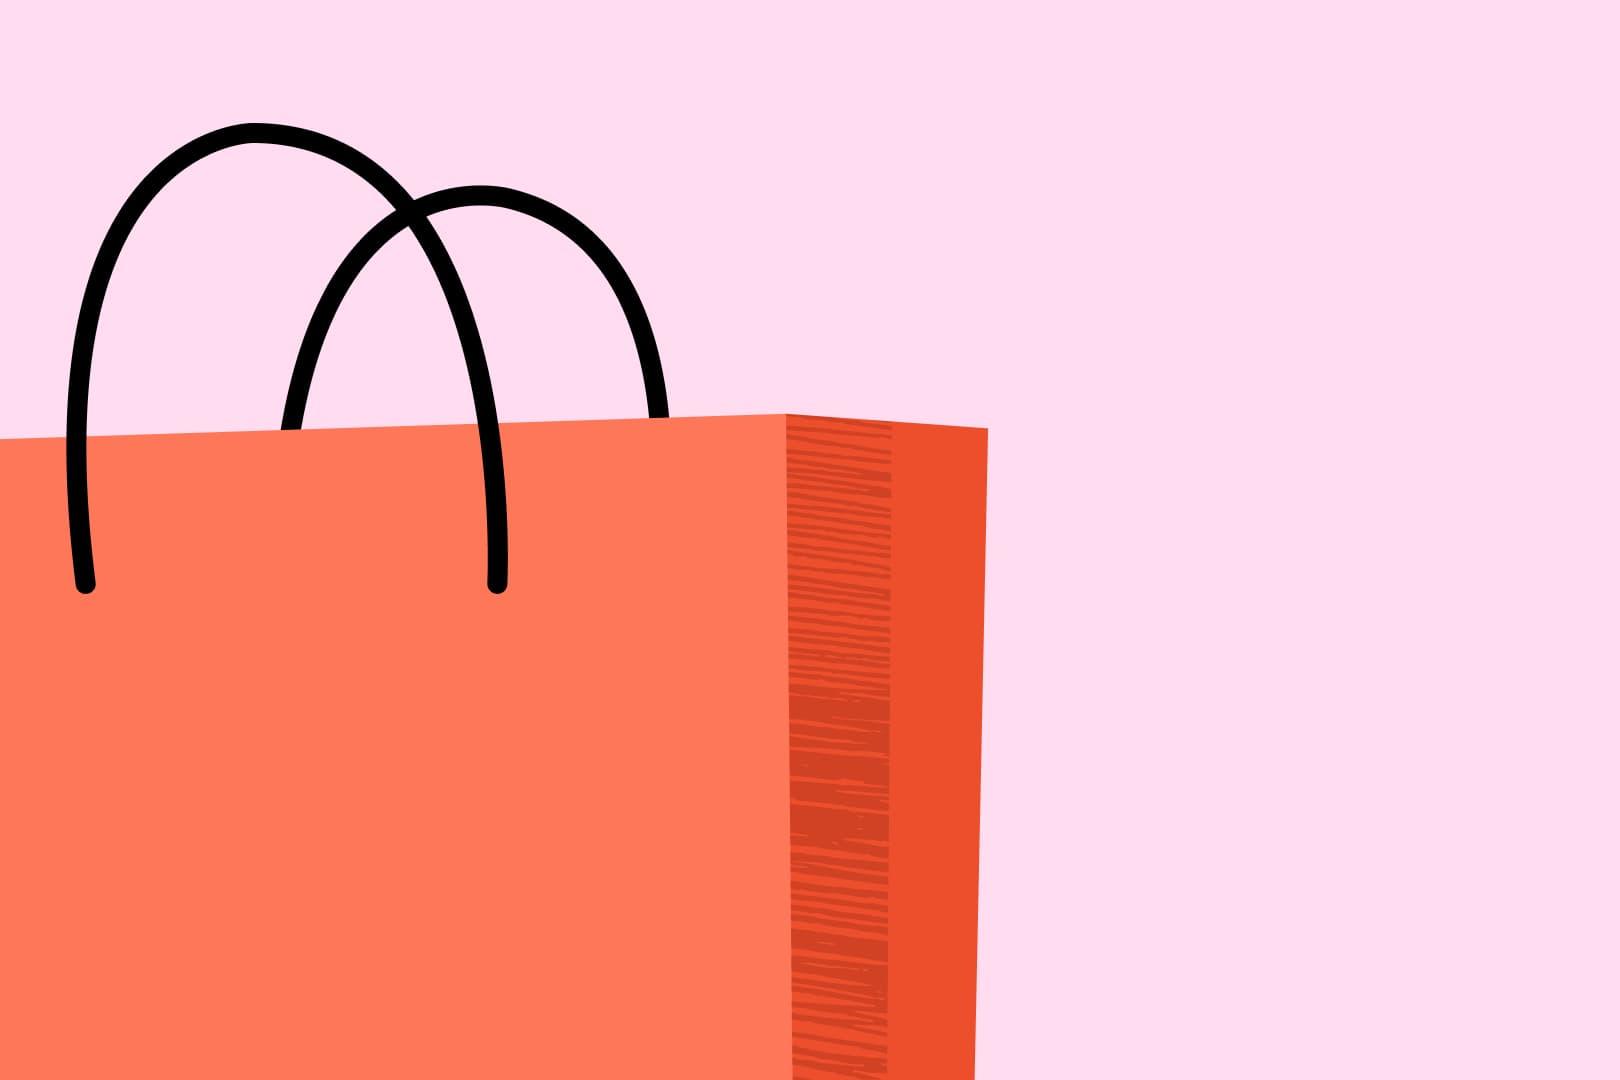 vaaleanpunaisella taustalla oleva illustraatiokuva, jossa on punainen ostoskassi